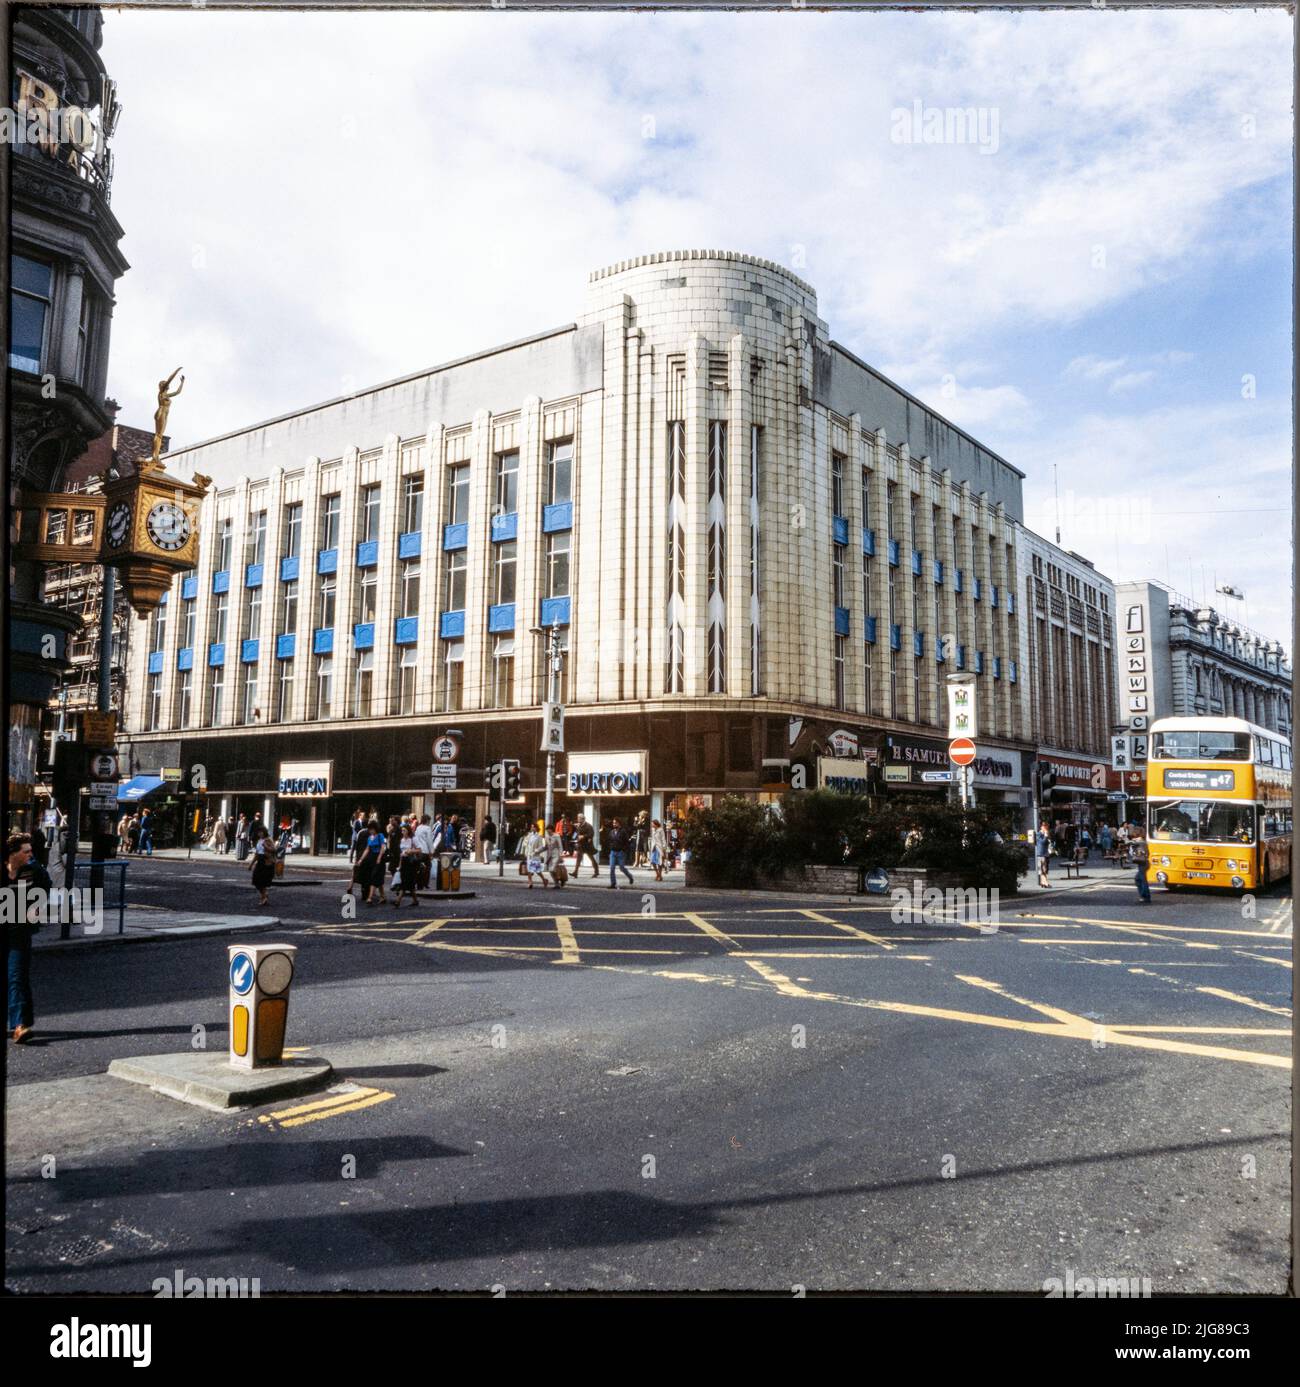 Burton, 2-16, rue New Bridge, Newcastle upon Tyne, 1980-1995. Le magasin Burton de style Art déco, situé à l'angle de New Bridge Street et de Northumberland Street, est visible de l'autre côté de la jonction de la route vers le sud-est. La cartographie historique indique que les étages supérieurs ont été utilisés comme NAAFI en 1950s. Le bâtiment a été démoli vers 1990 et le site a été réaménagé dans le cadre du centre commercial Monument Mall. Banque D'Images